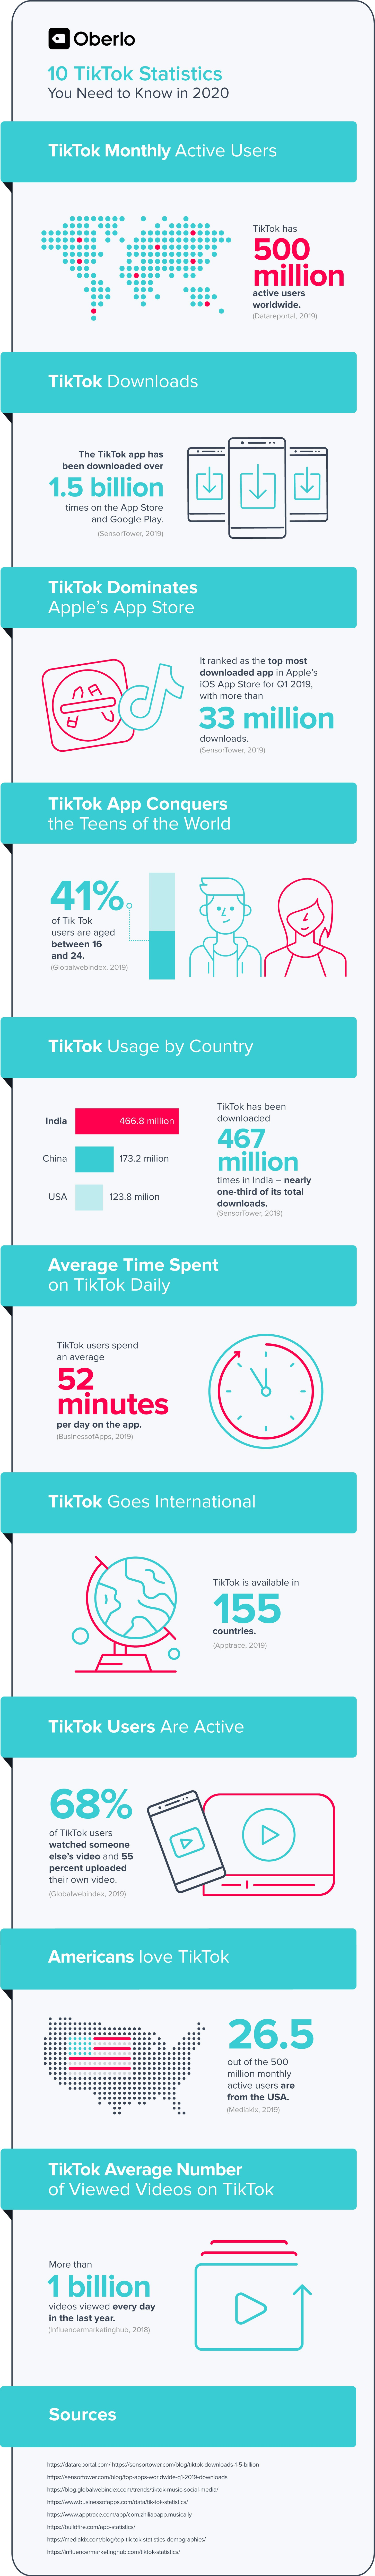 10 datos que debes conocer sobre TikTok en 2020